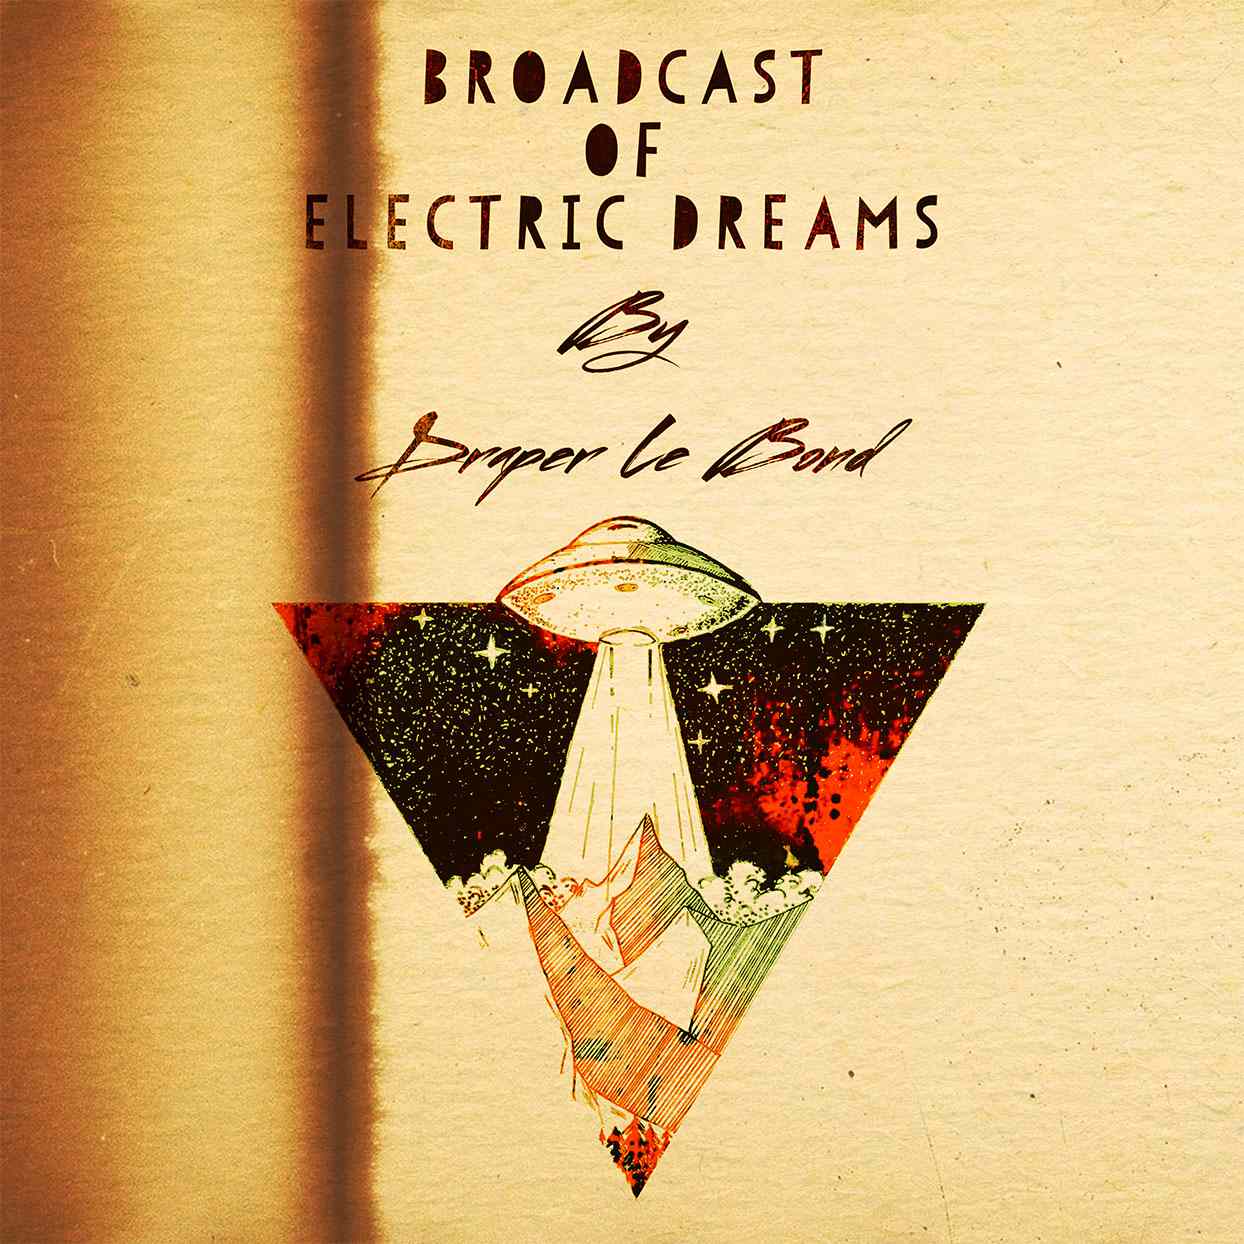 Broadcast of Electric Dreams portadaen